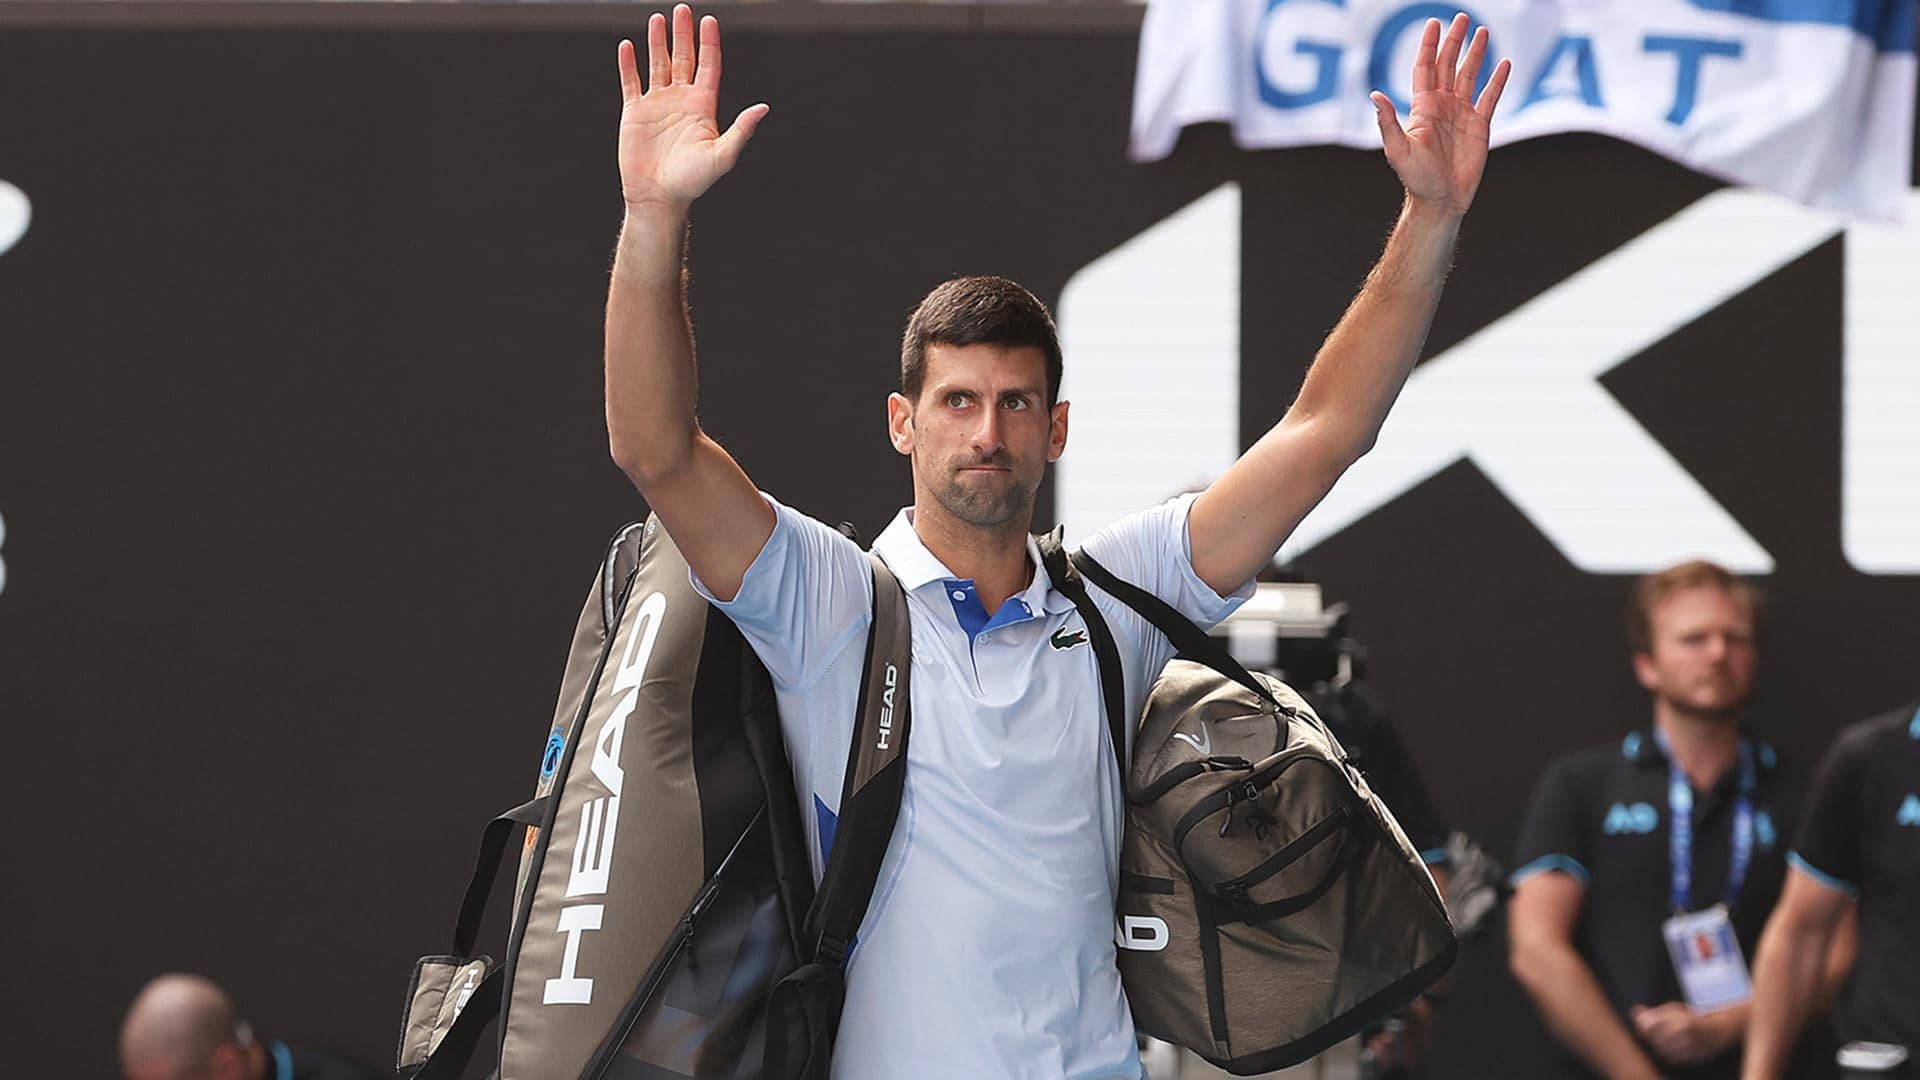 Novak Djokovic lost to Jannik Sinner on Friday at the Australian Open.